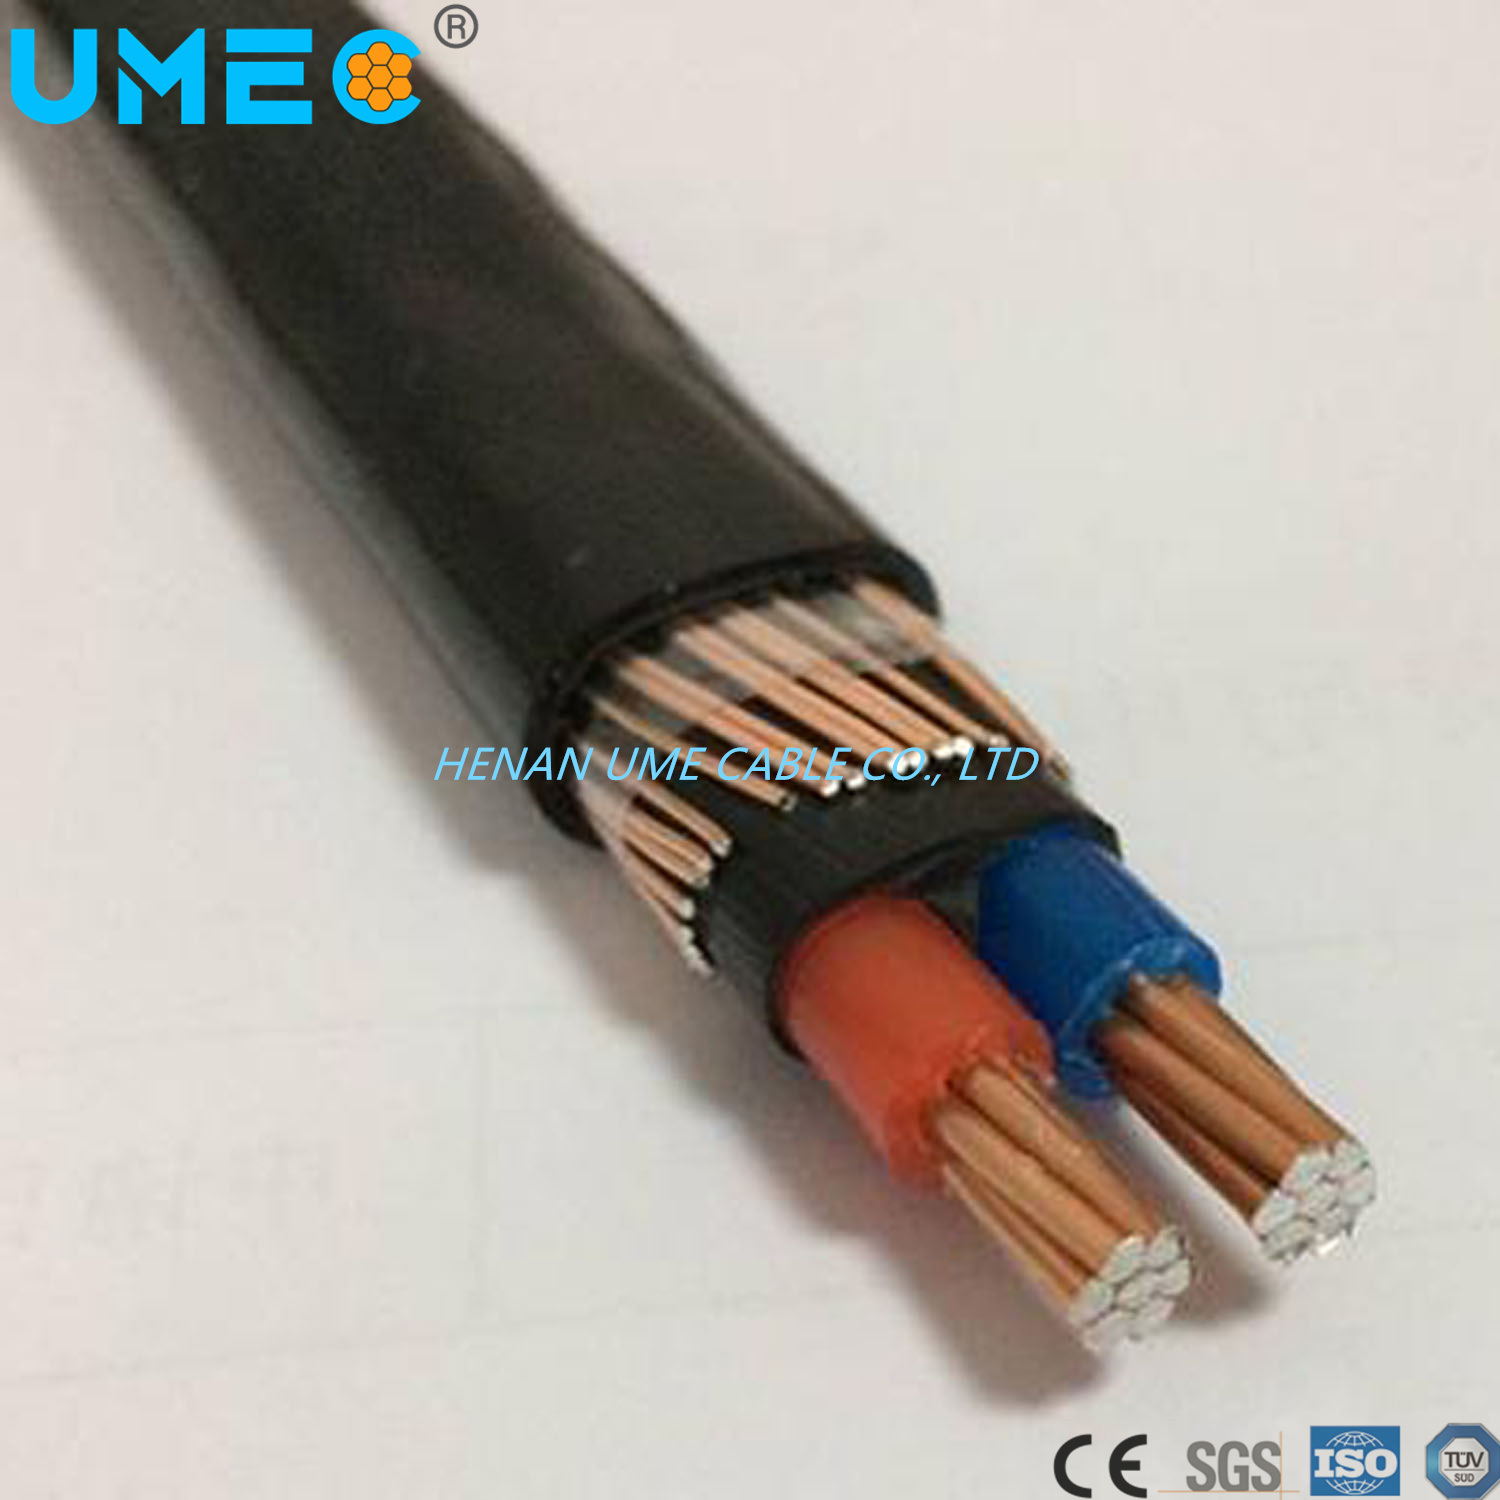 
                Split câble concentriques Allied câble métallique
            